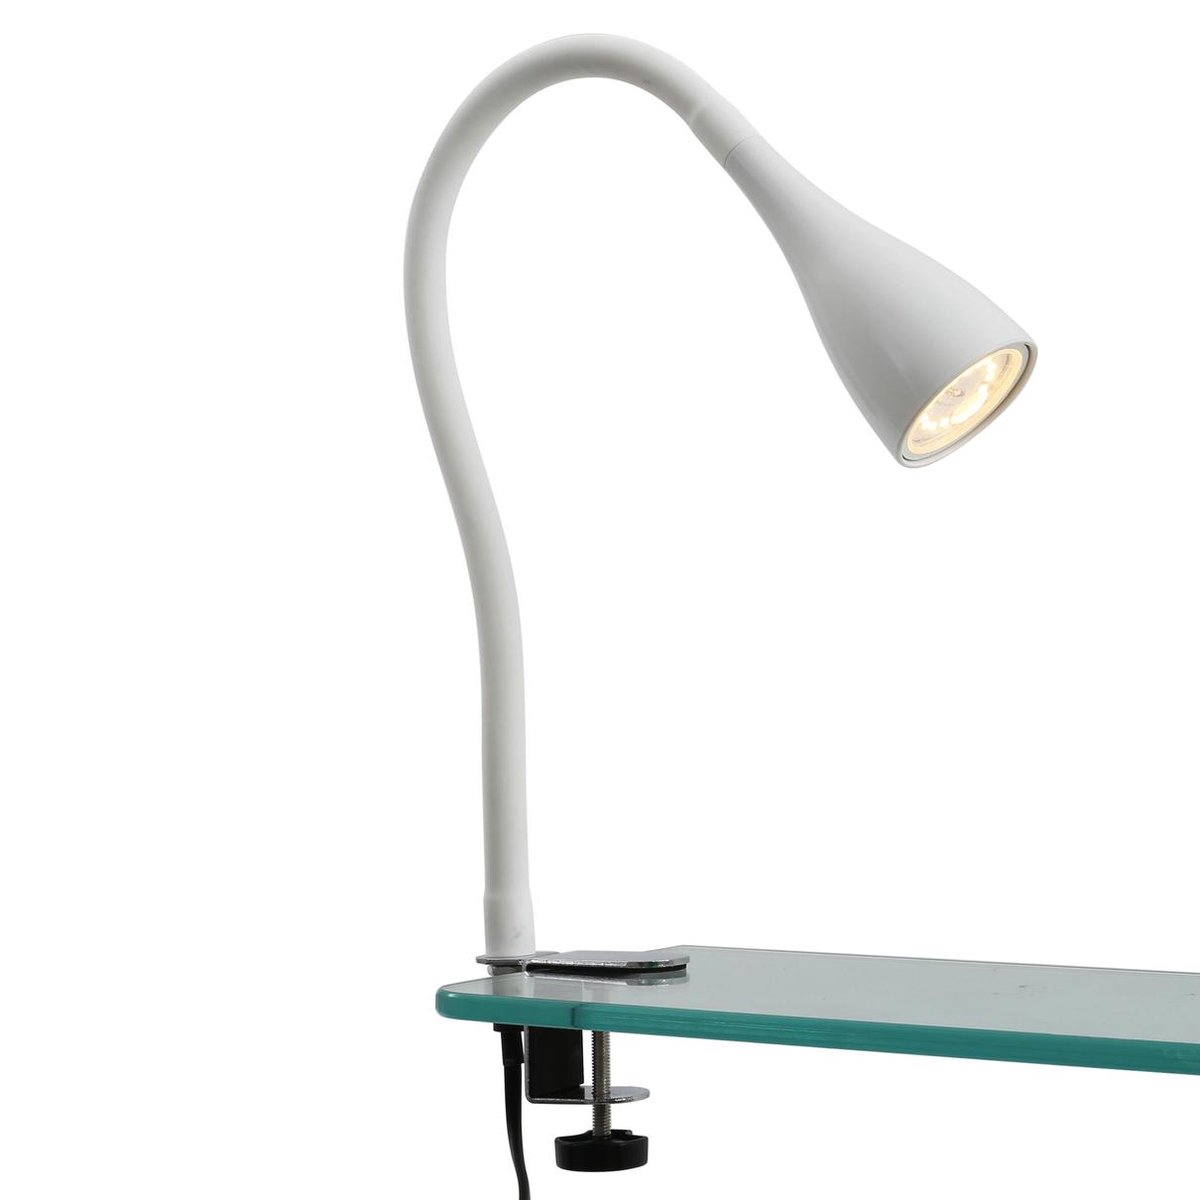 BK Licht - Lampe de table dimmable - sans fil - lampe de chevet